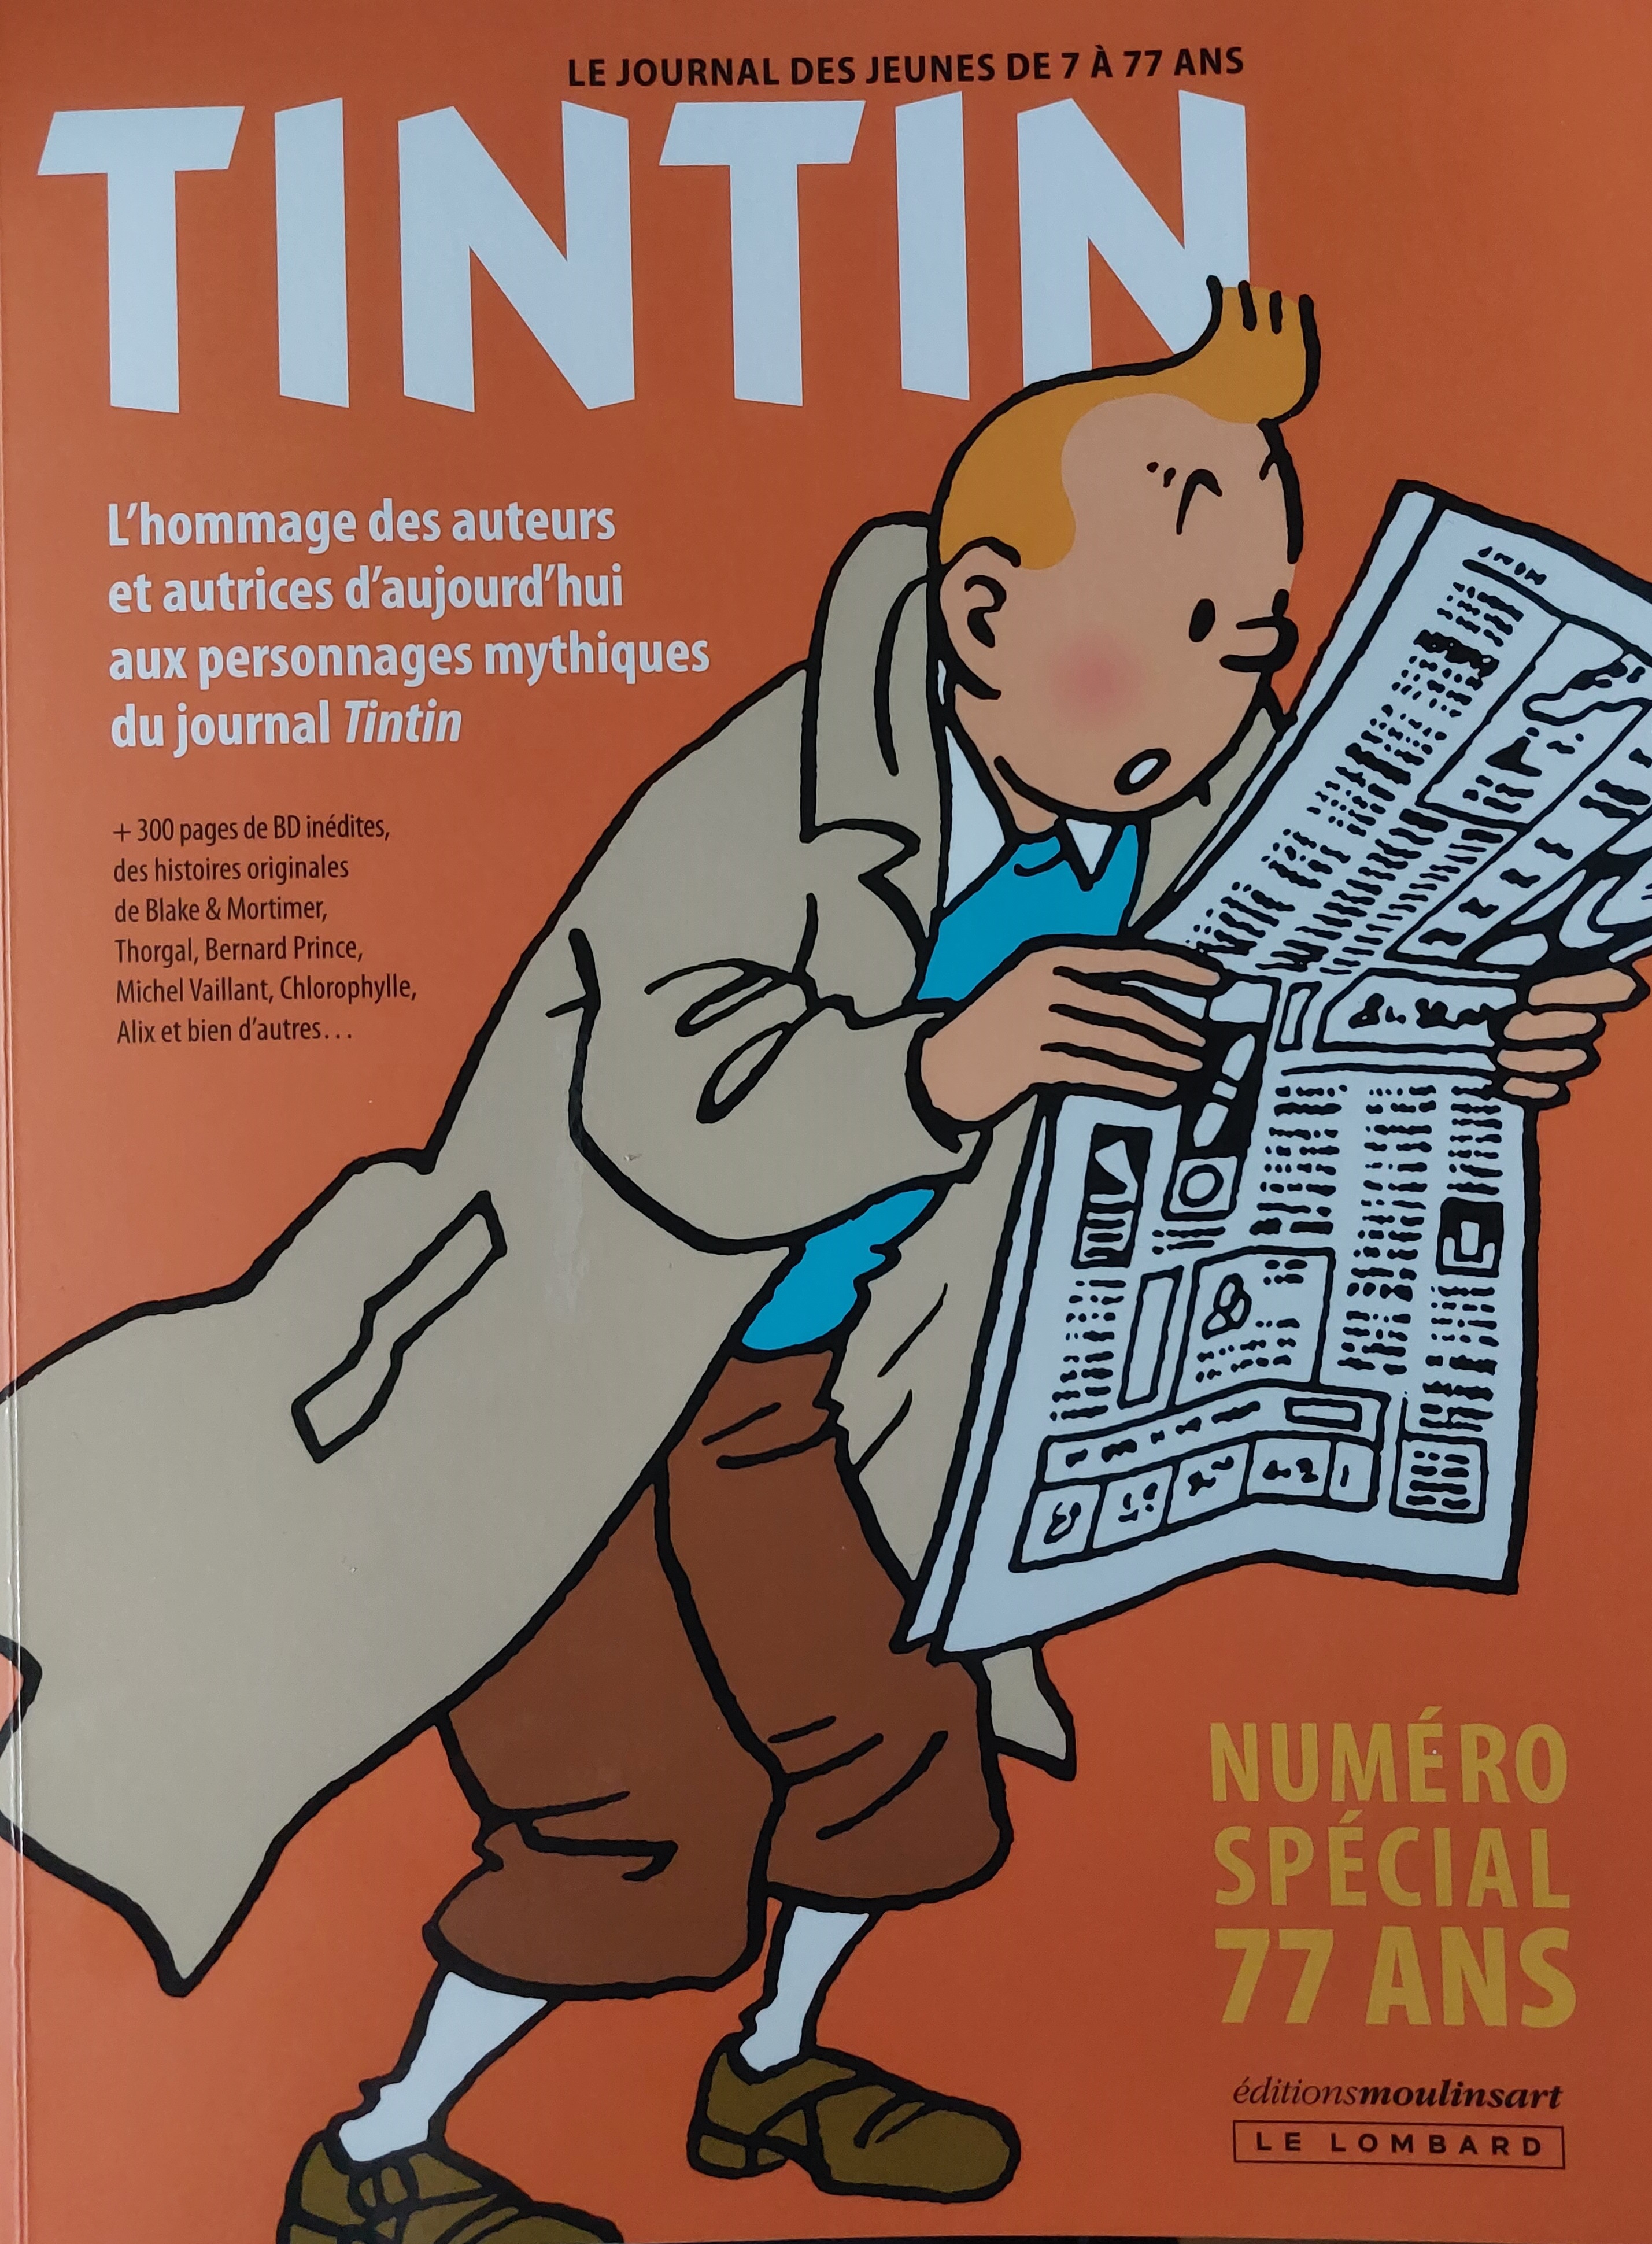 300 pages de BD inédites, de nouveaux dessinateurs «Le Journal de Tintin»  est de retour pour ses 77 ans